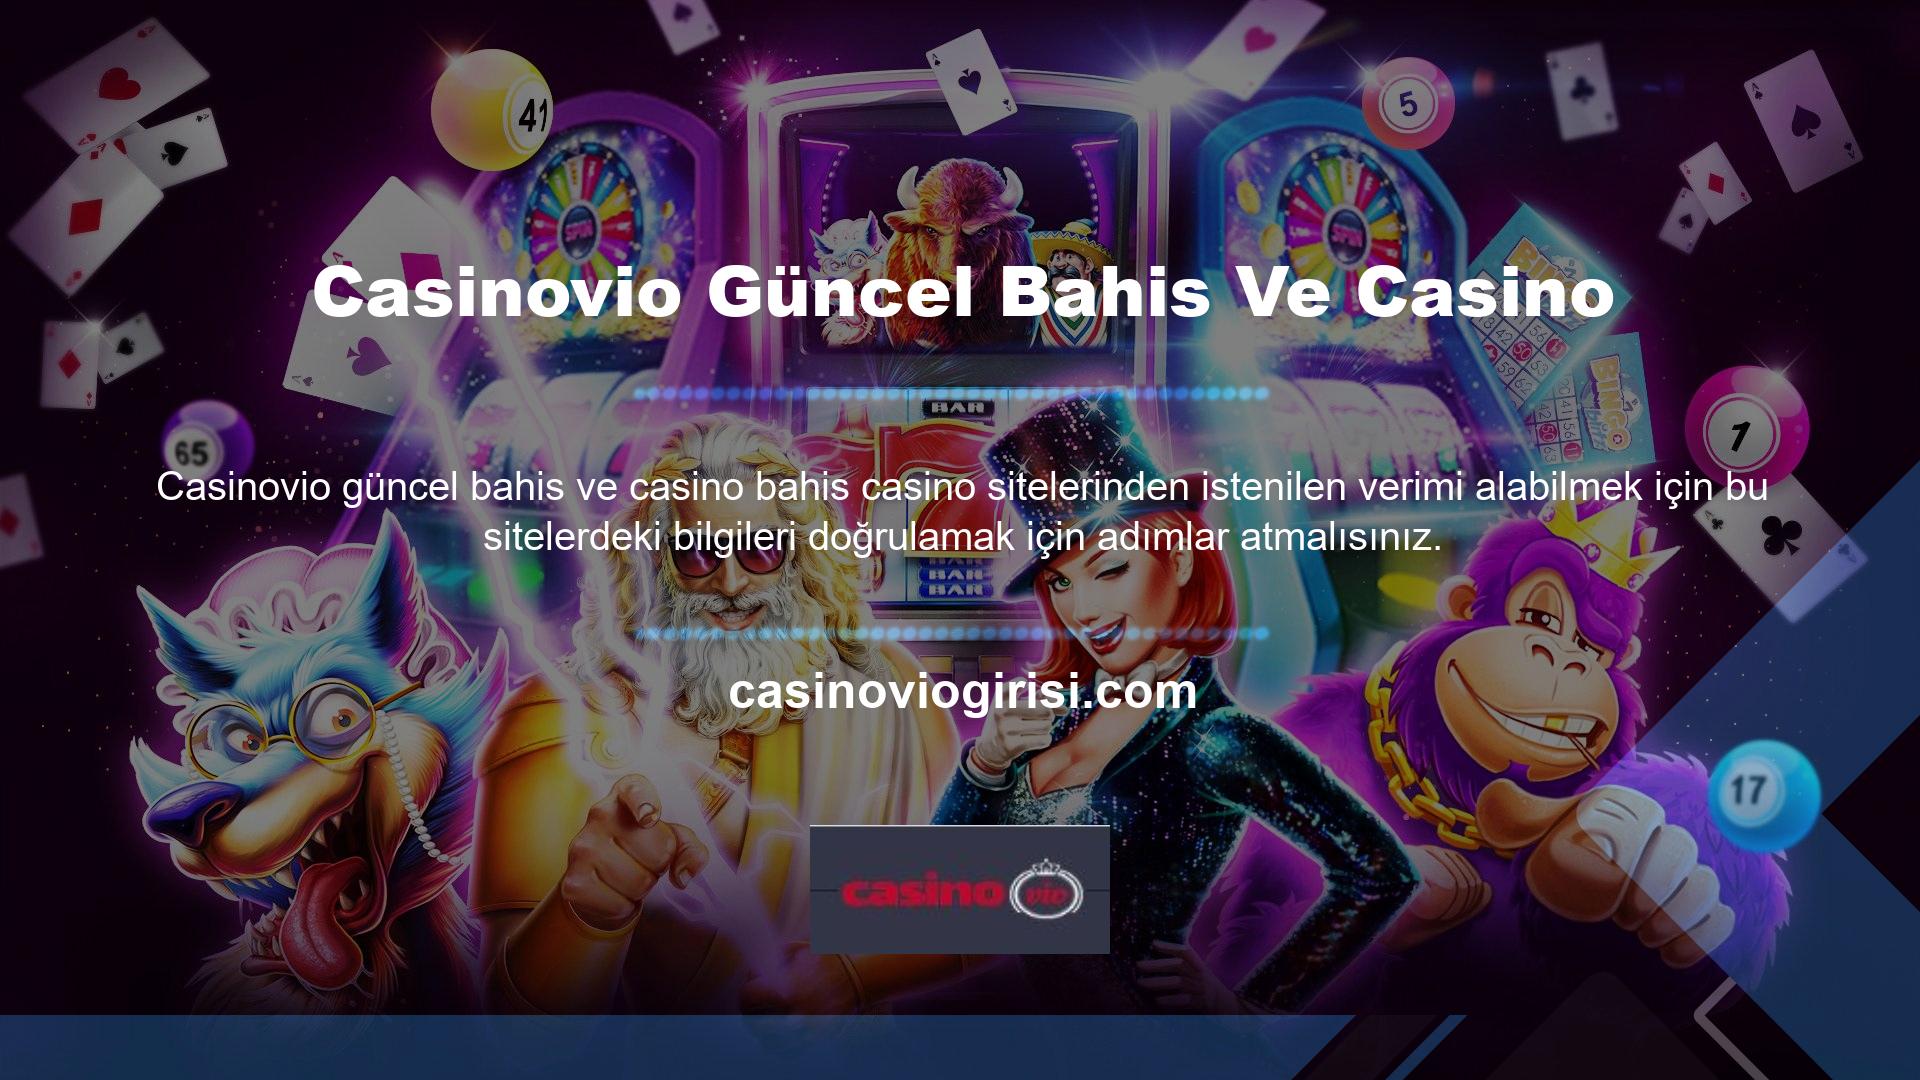 Bu siteler, Casinovio mevcut casino gereksinimlerini karşılayan birçok özelliğe sahiptir ve yasal kısıtlamalar nedeniyle yasa dışı casino olarak kabul edilmektedir